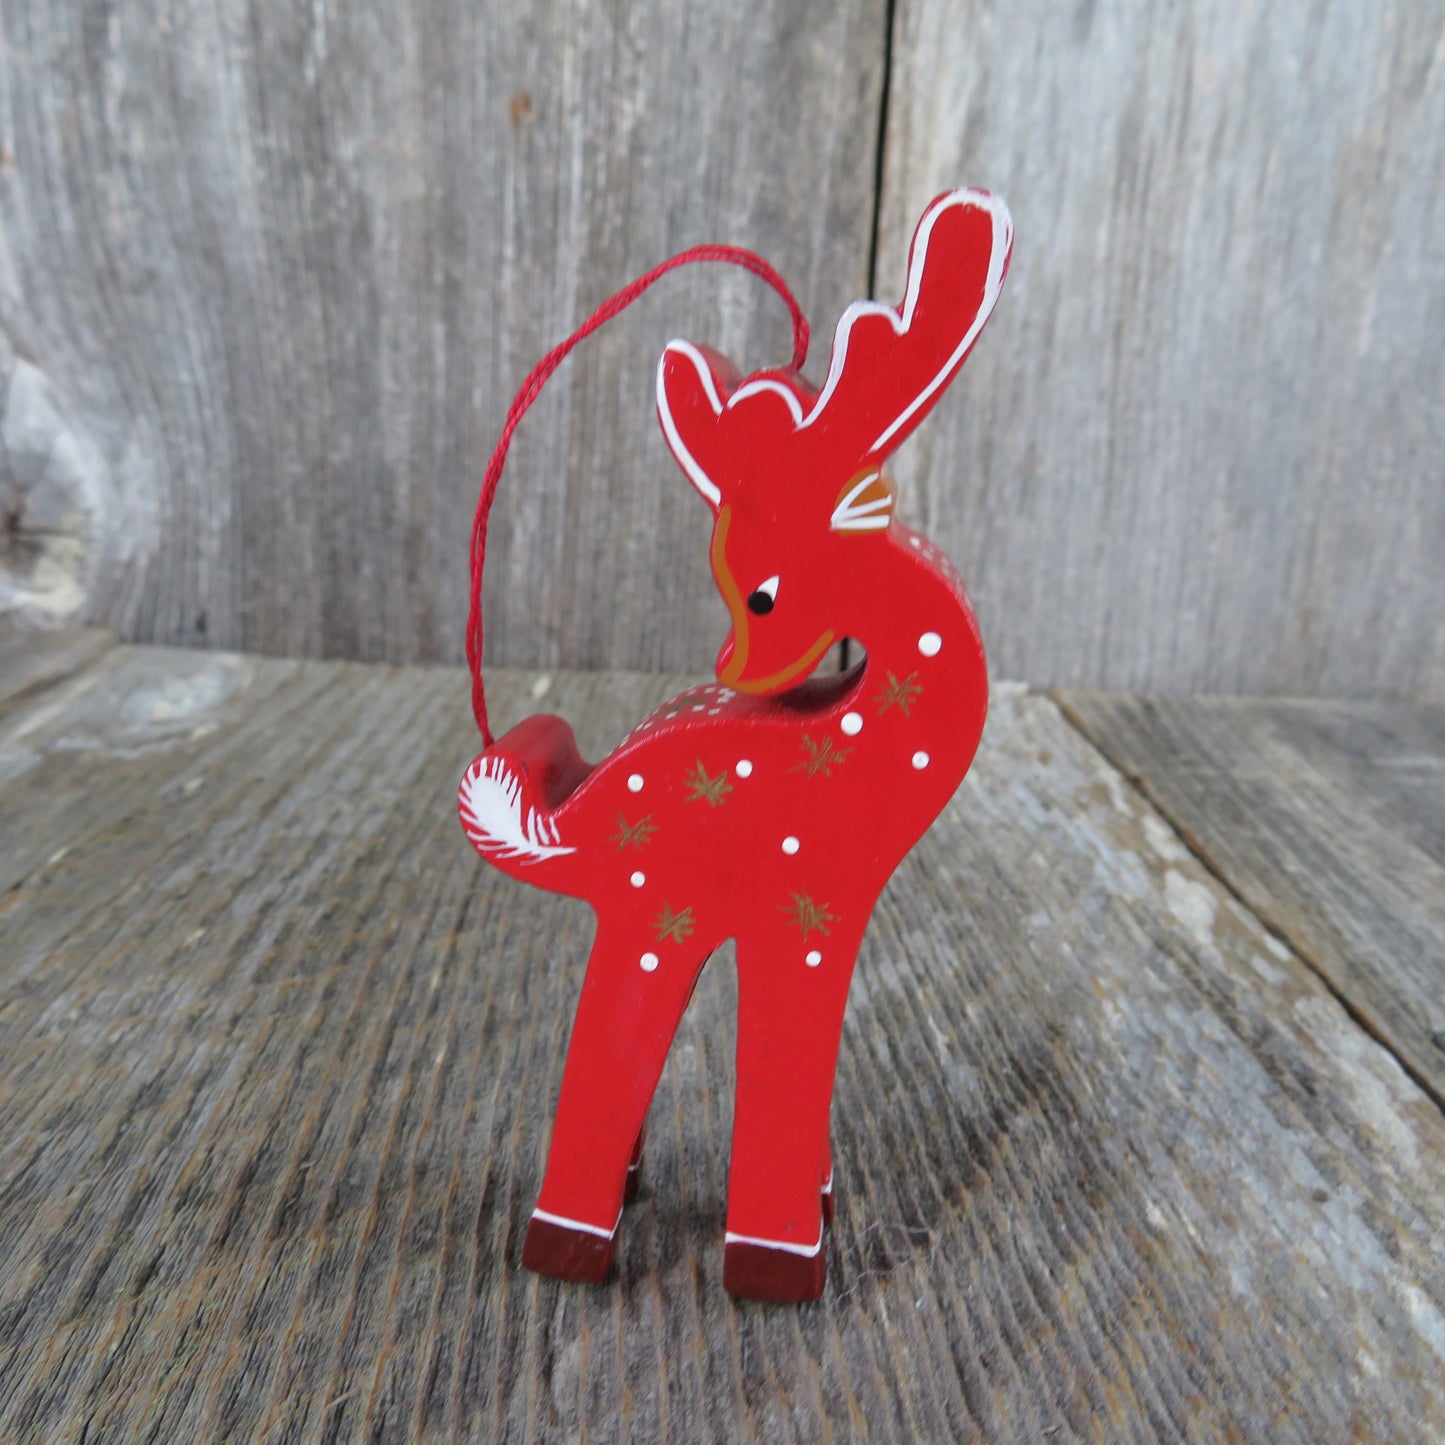 Vintage Reindeer Wood Ornament Red Gold Christmas Deer Looking Over Shoulder - At Grandma's Table